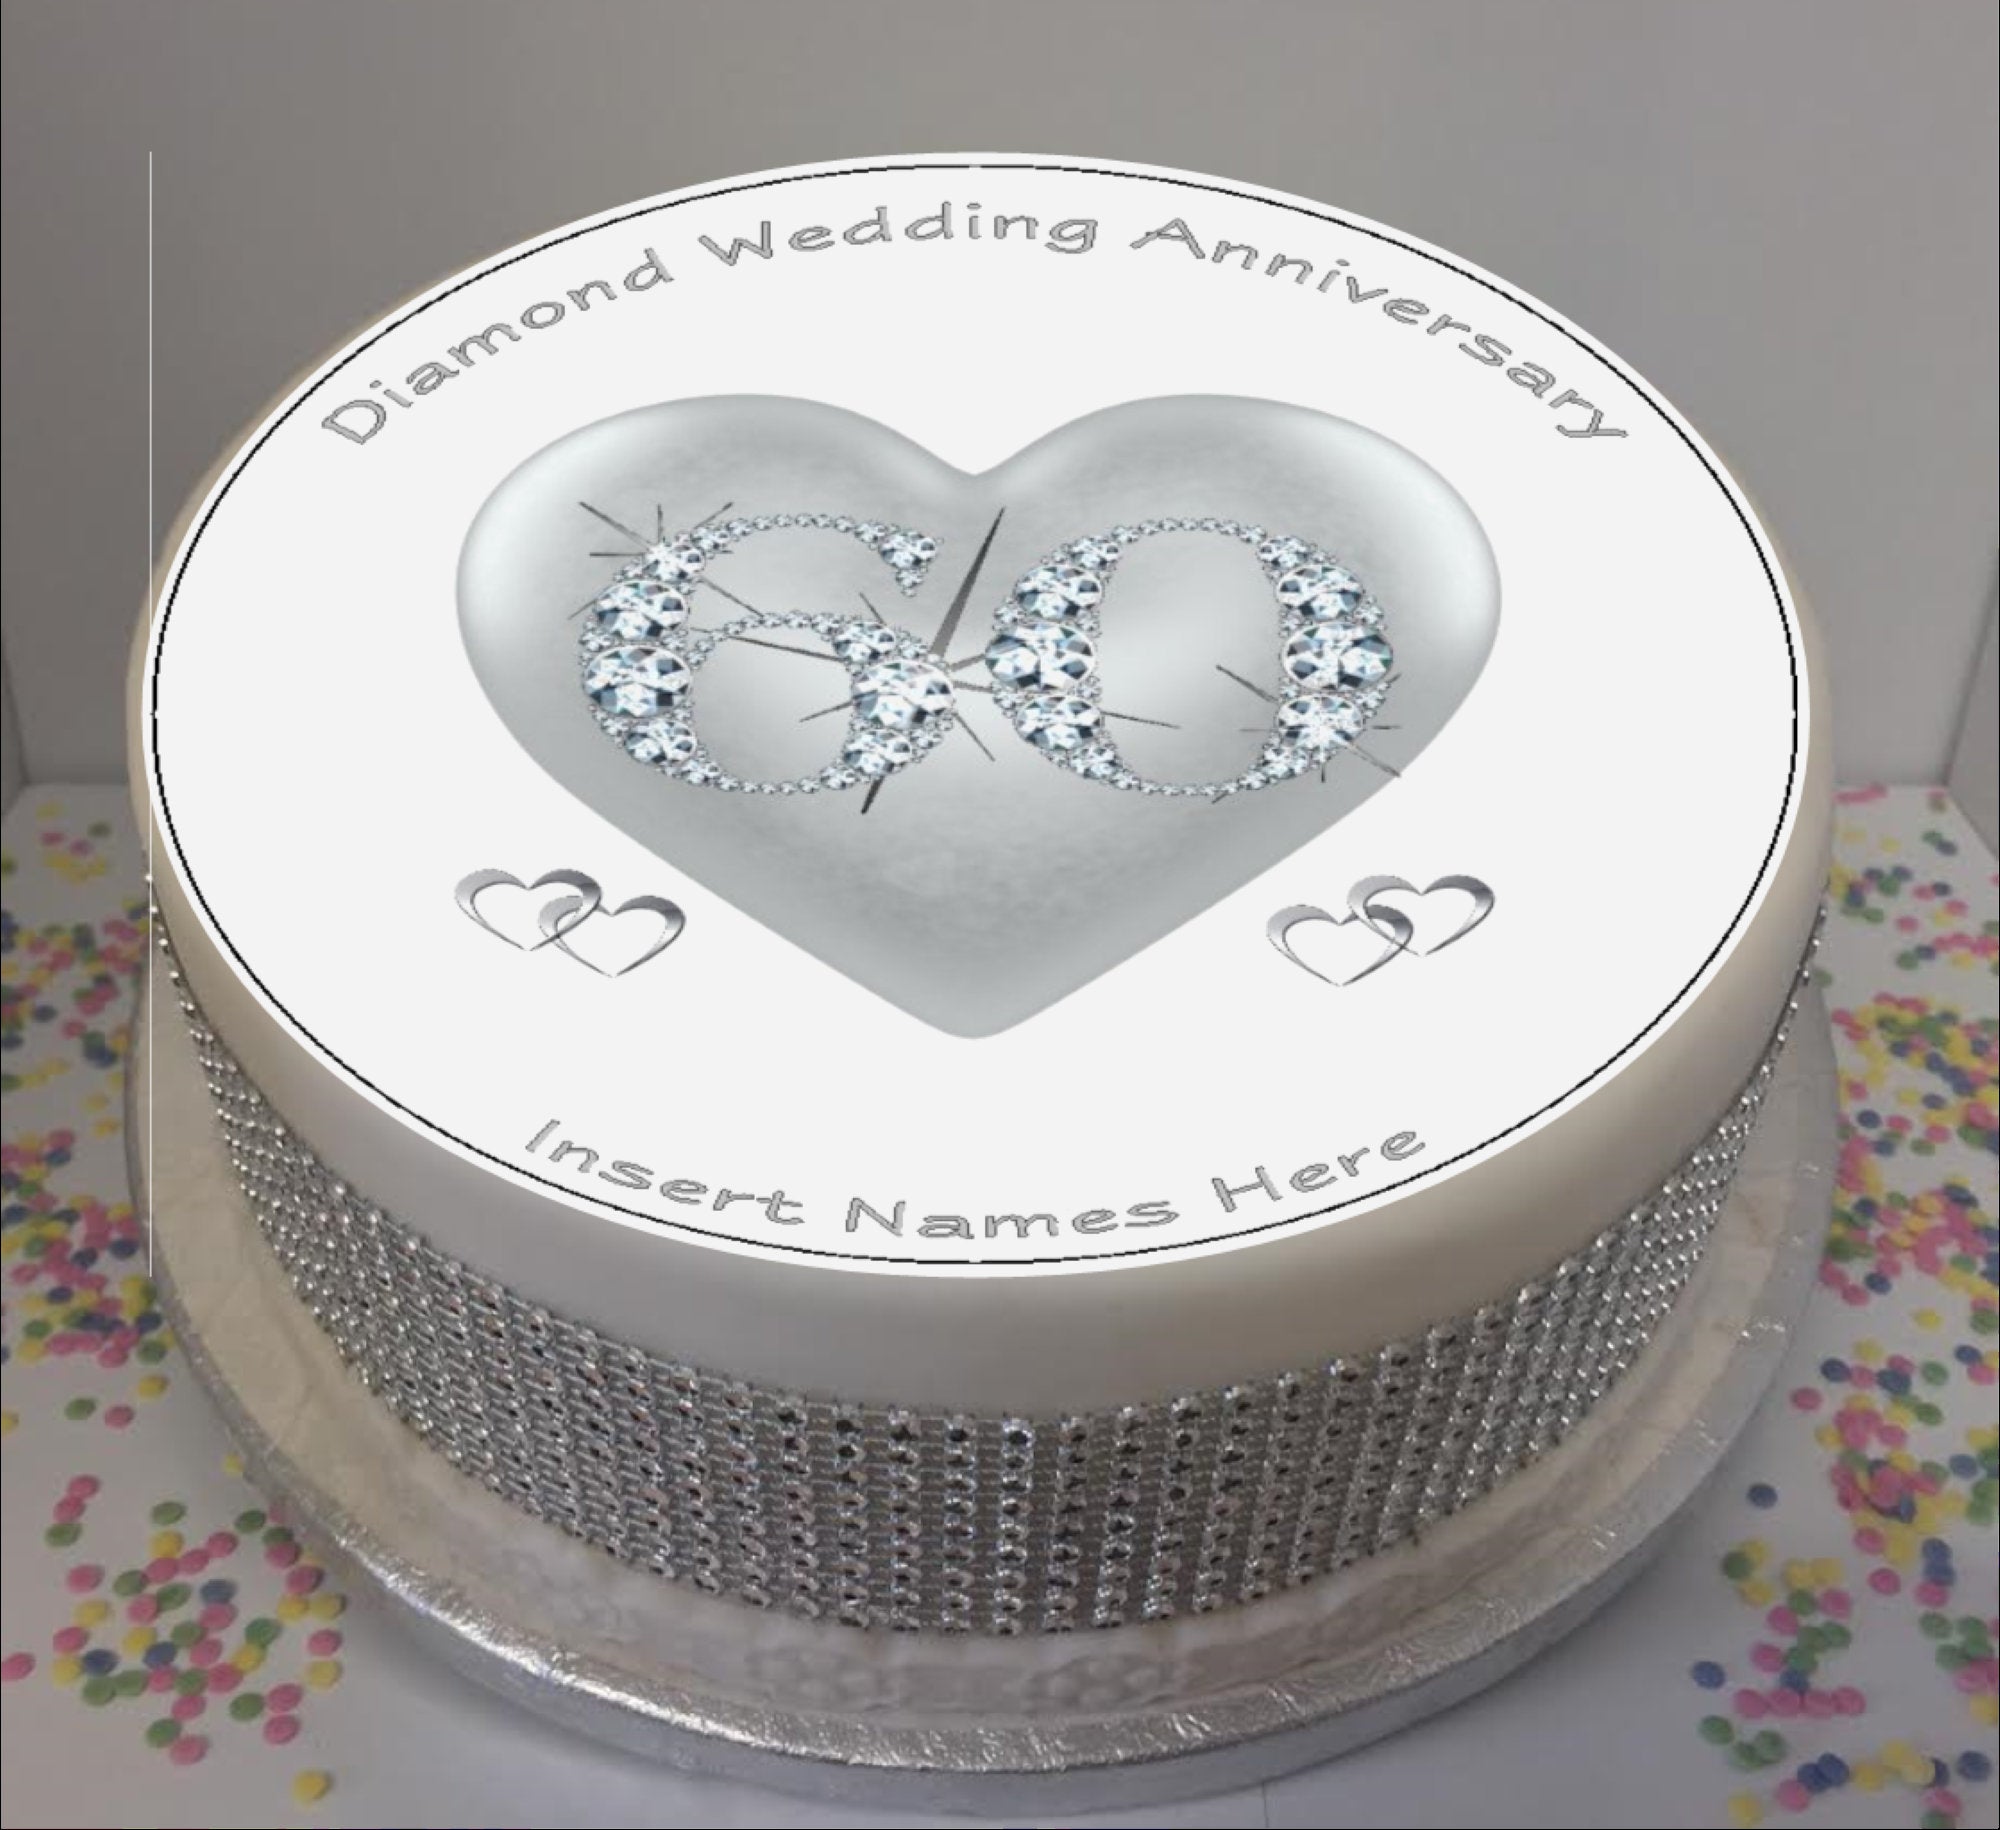 60 Diamond Years Anniversary Acrylic Cake Topper